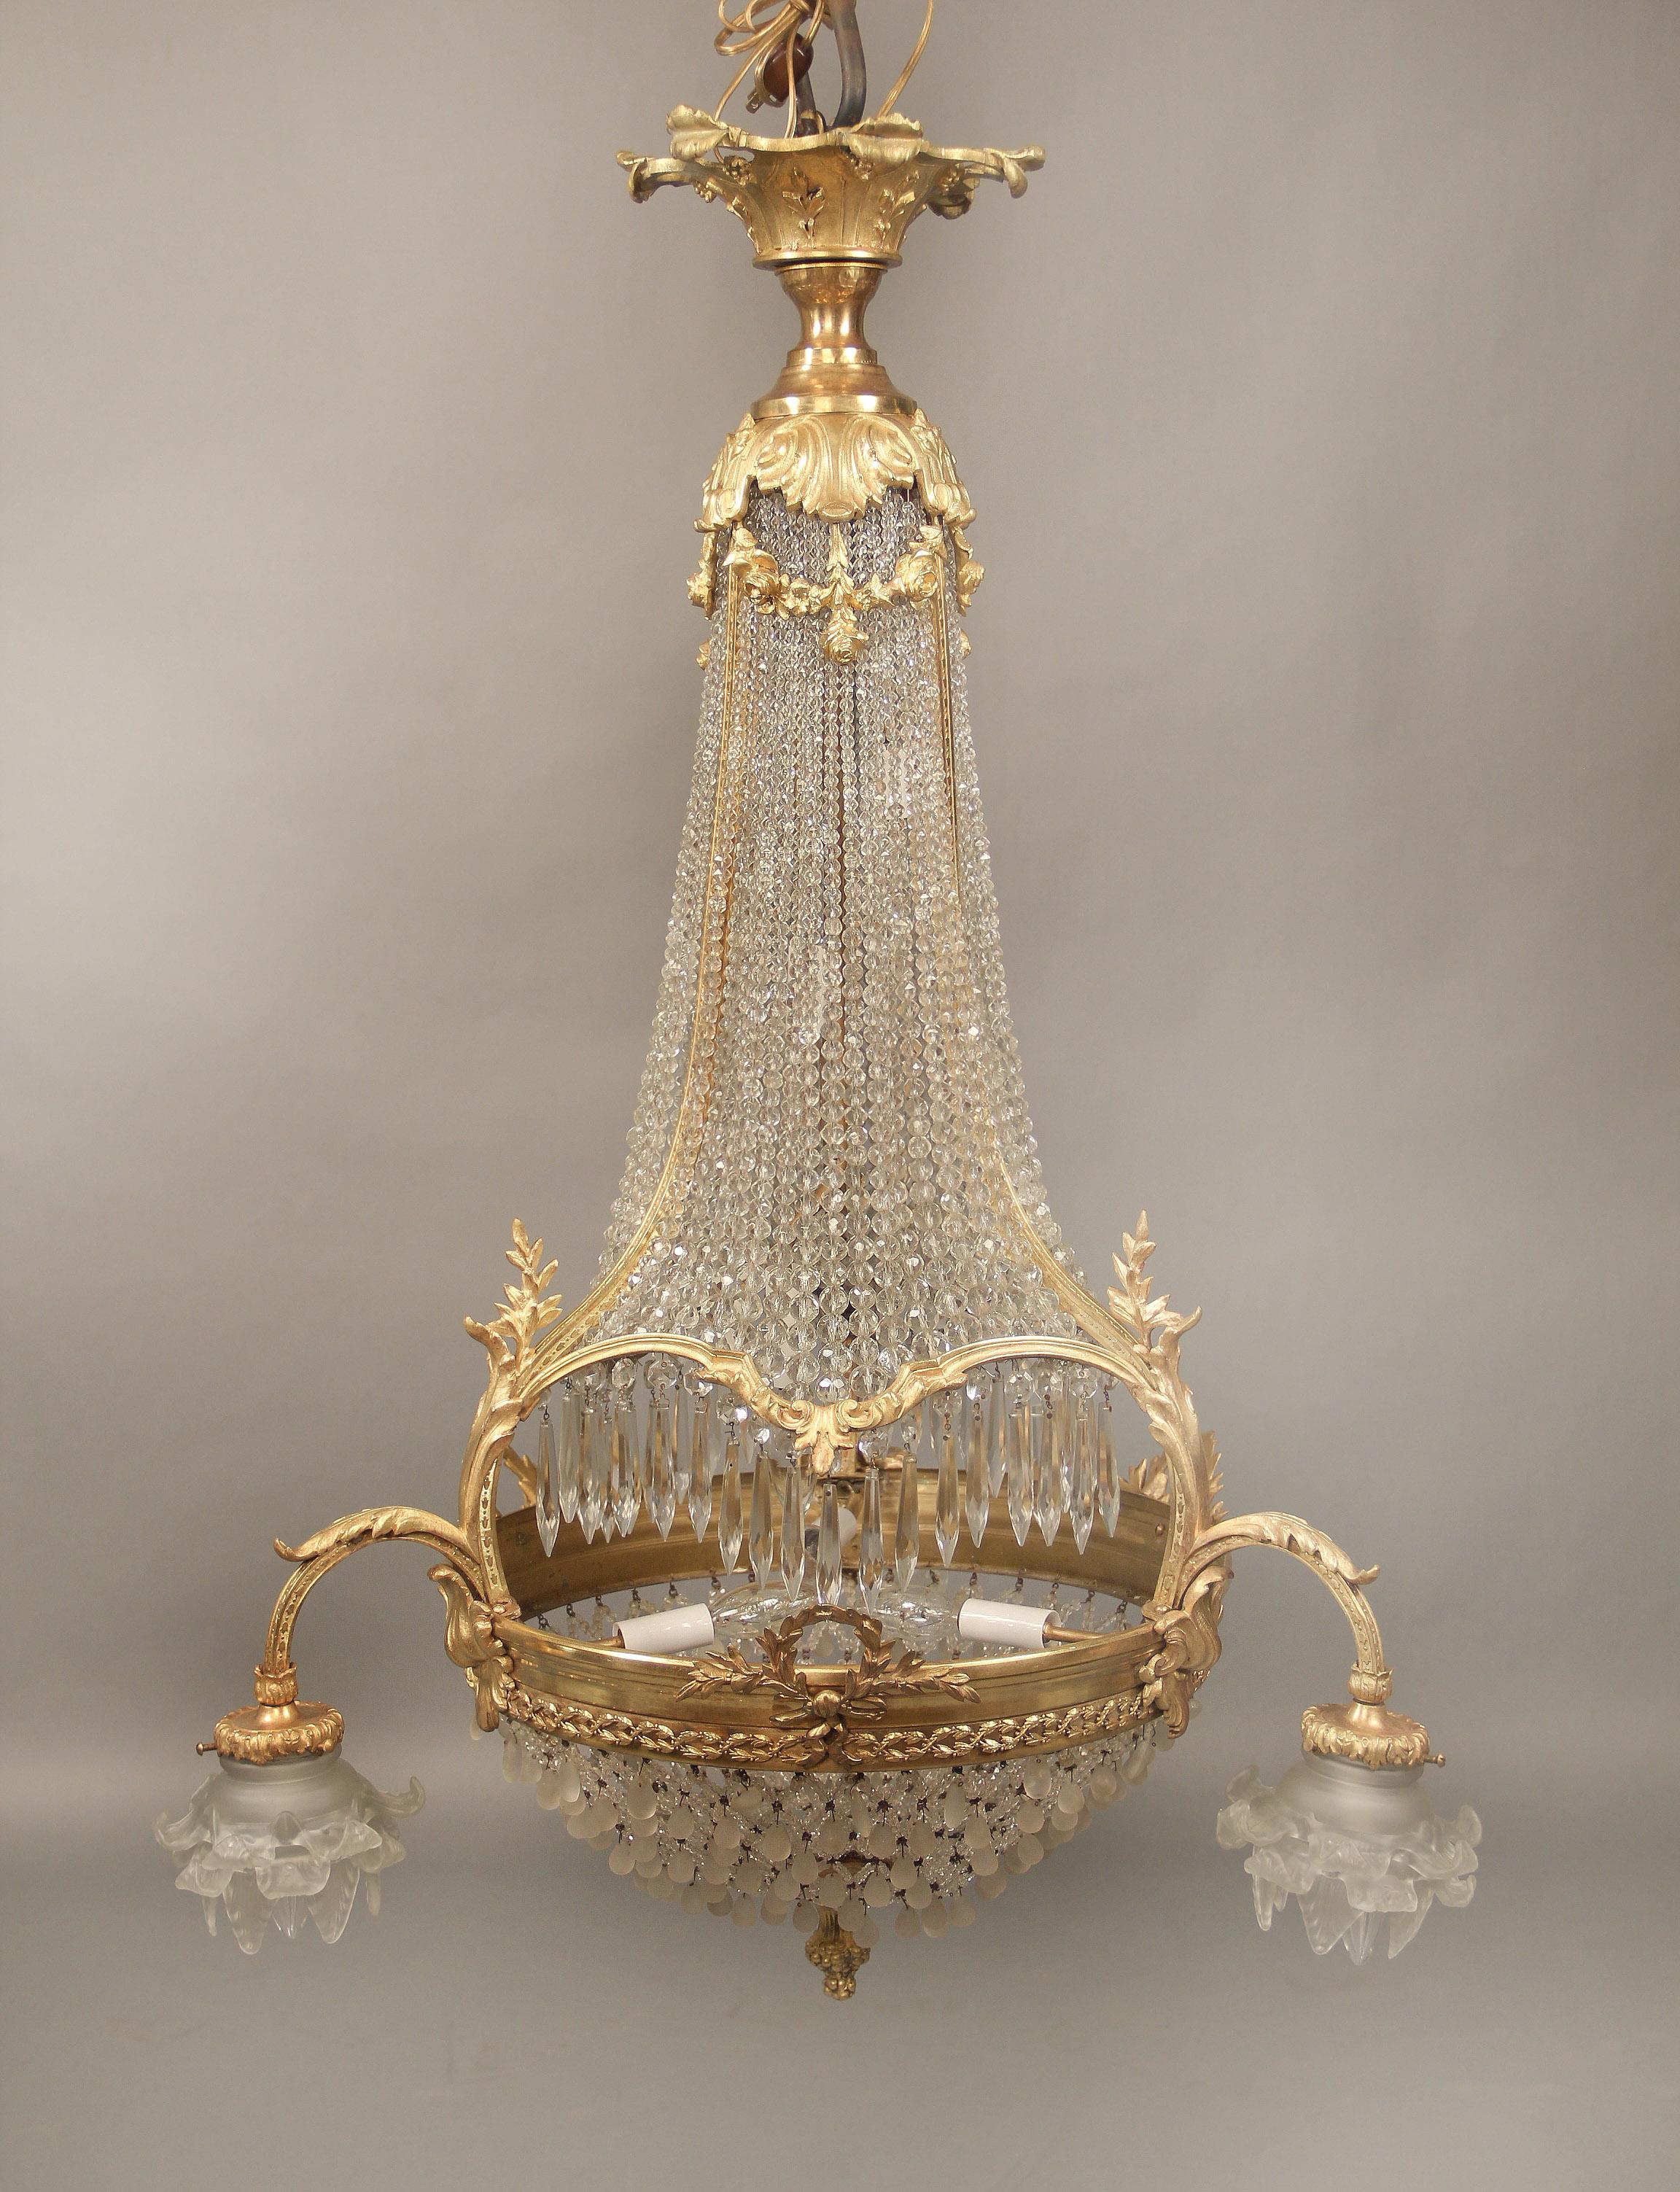 Ein schöner Neun-Licht-Kronleuchter aus vergoldeter Bronze des späten 19. Jahrhunderts.

Der obere und der untere Teil des Käfigs sind durch Bronzebänder miteinander verbunden, der obere Teil mit Blumenmotiven, der untere mit Kränzen und drei